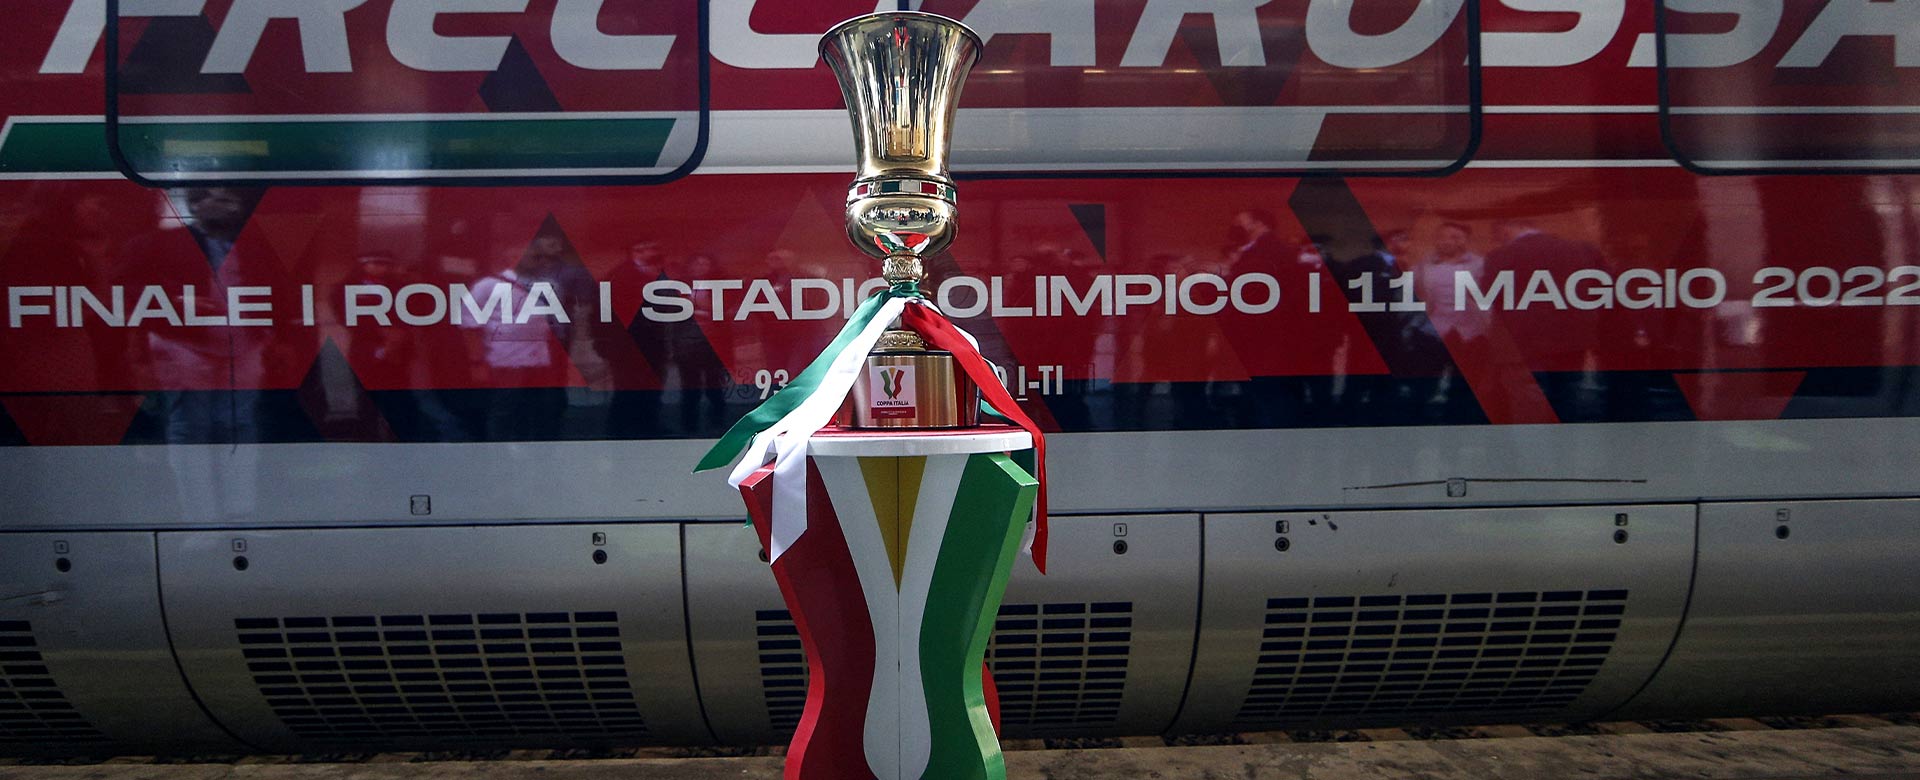 Il trofeo della Coppa Italia Frecciarossa in occasione della presentazione della finale 2022 alla stazione di Roma Termini 